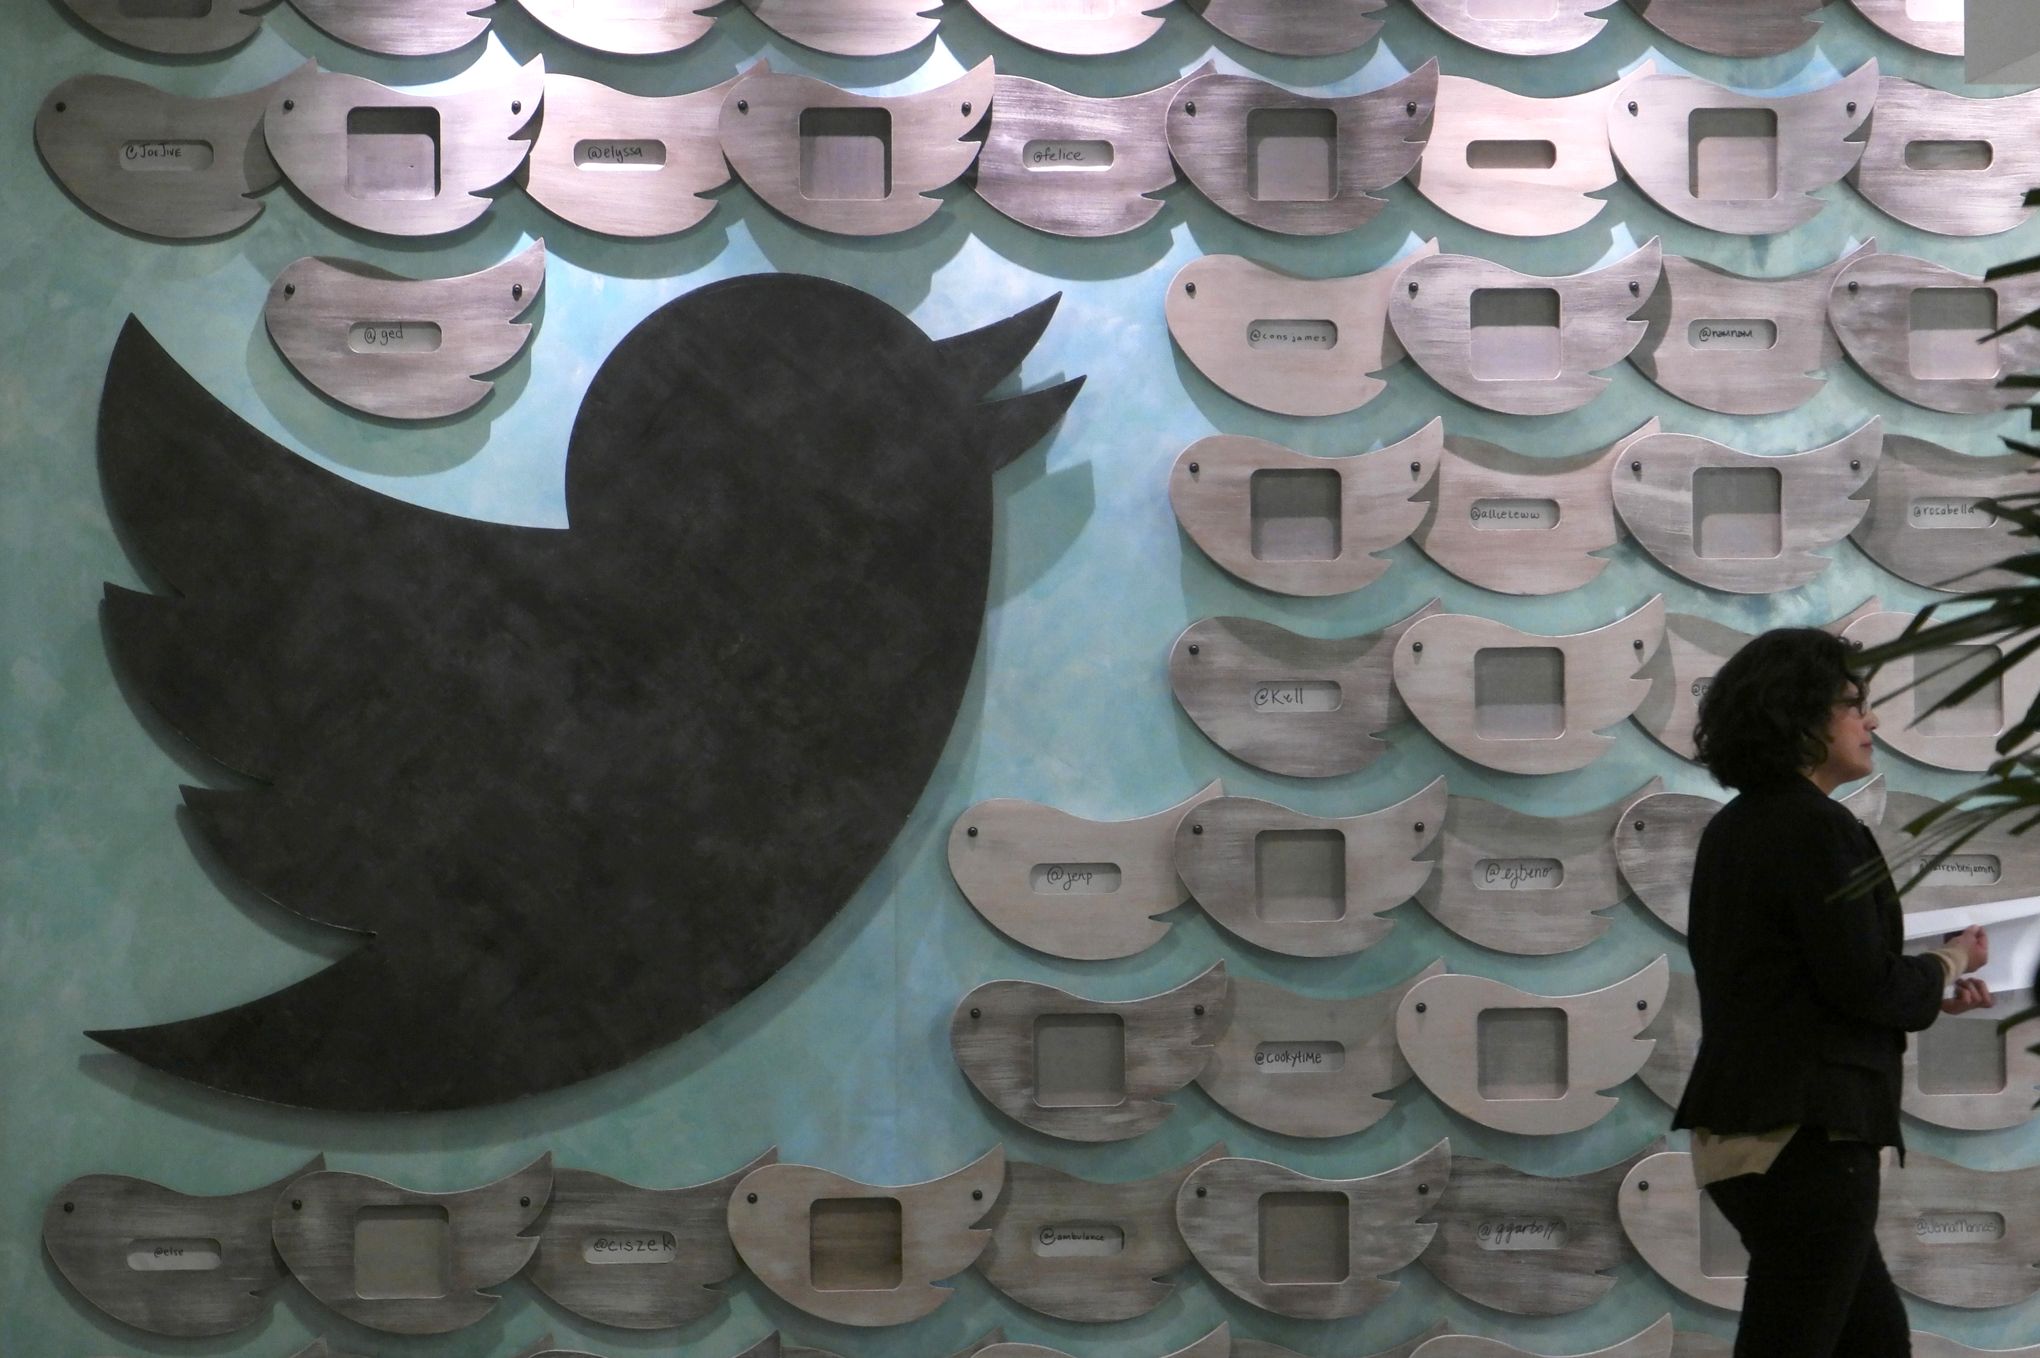 La lutte du cyberharcèlement sur Twitter grâce à l’intelligence artificielle